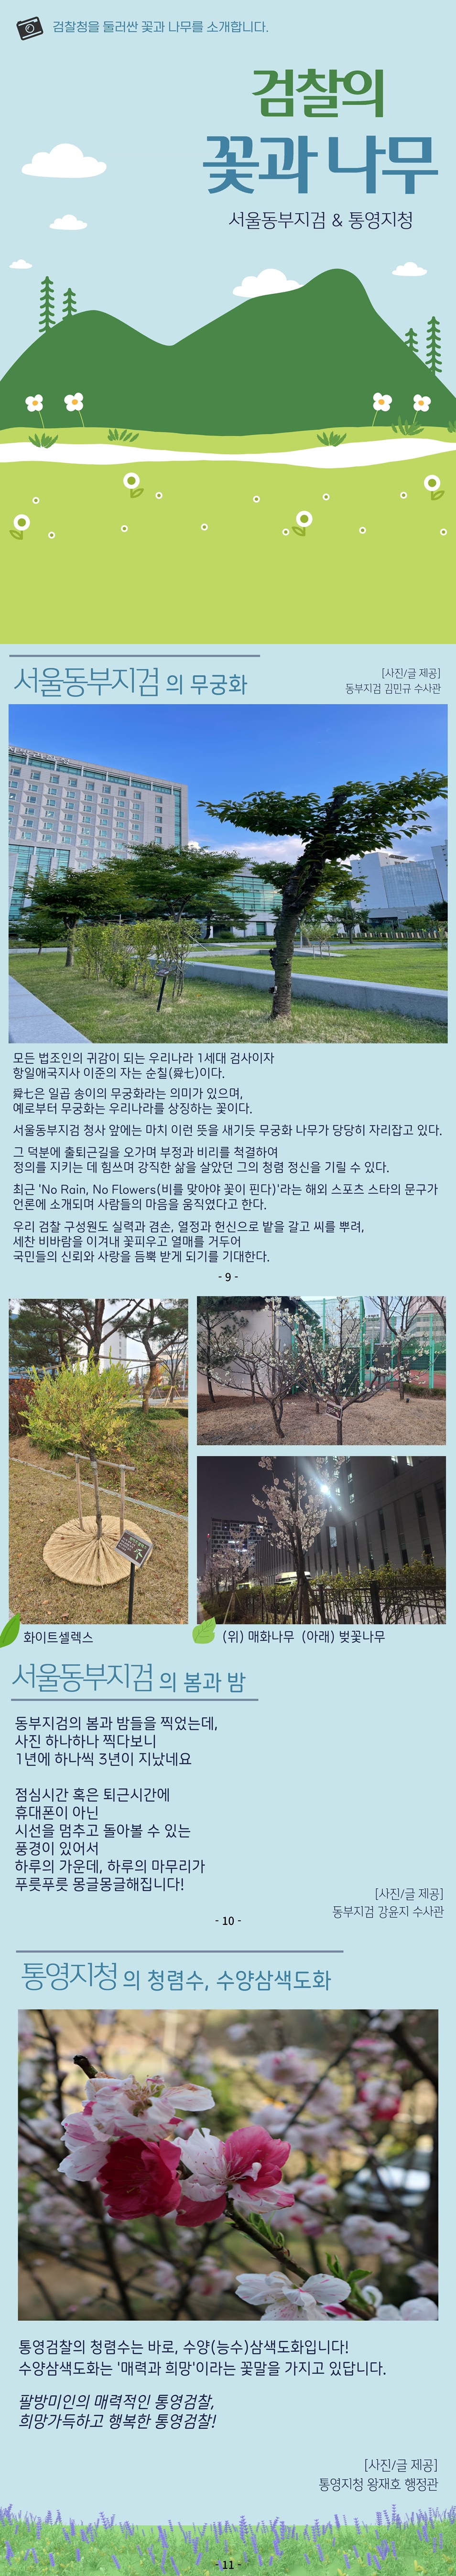 검찰의 꽃과 나무 8월호, 서울동부지검과 통영지청